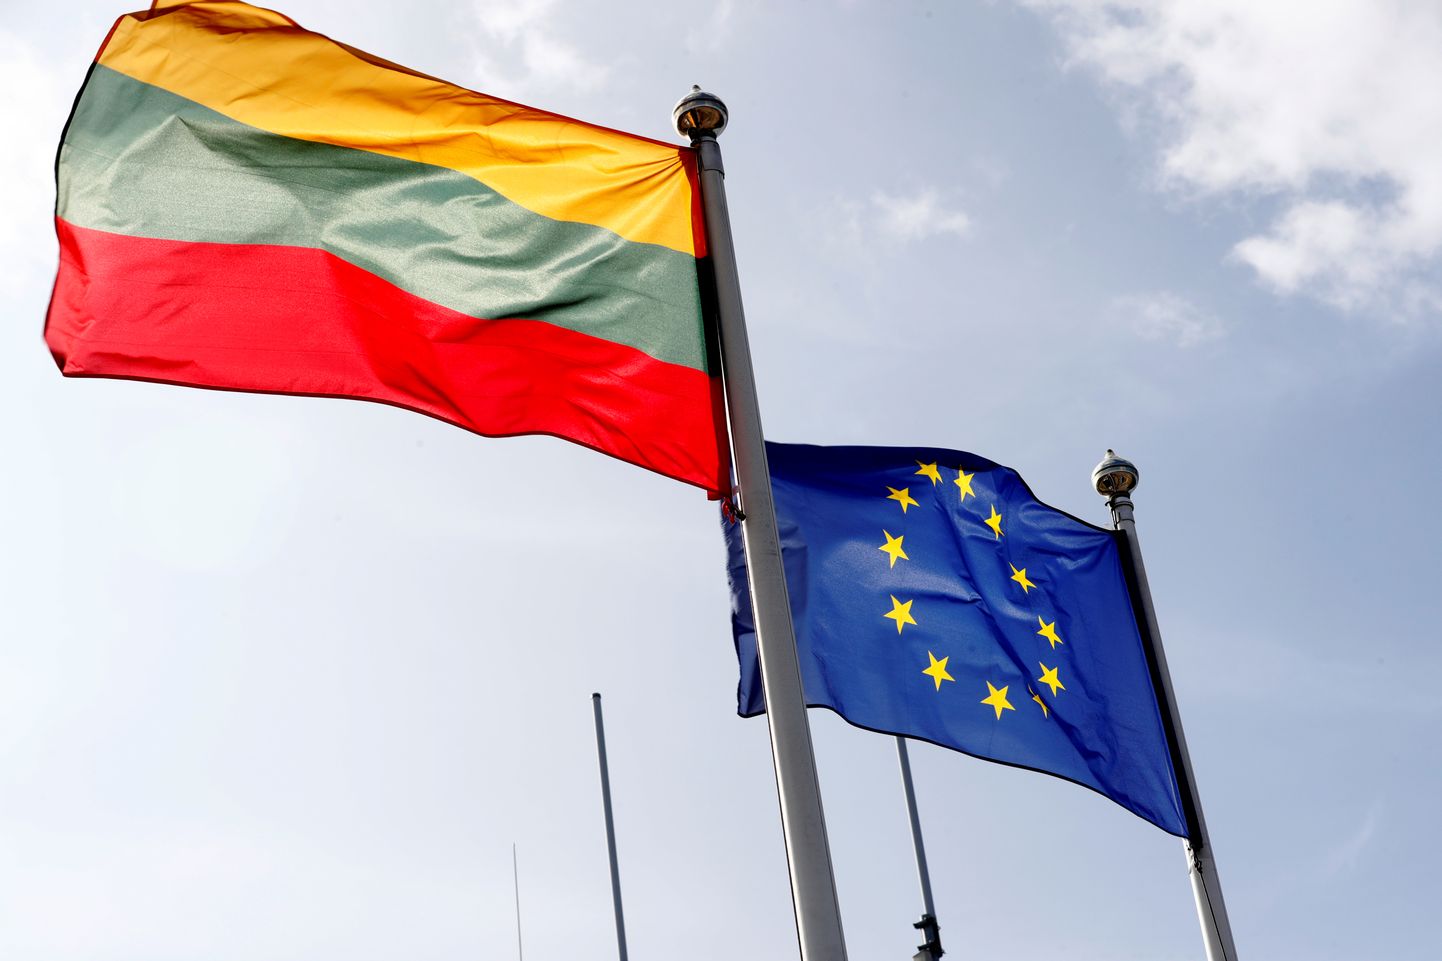 Leedu ja Euroopa Liidu lipud Leedus 18. september 2020.